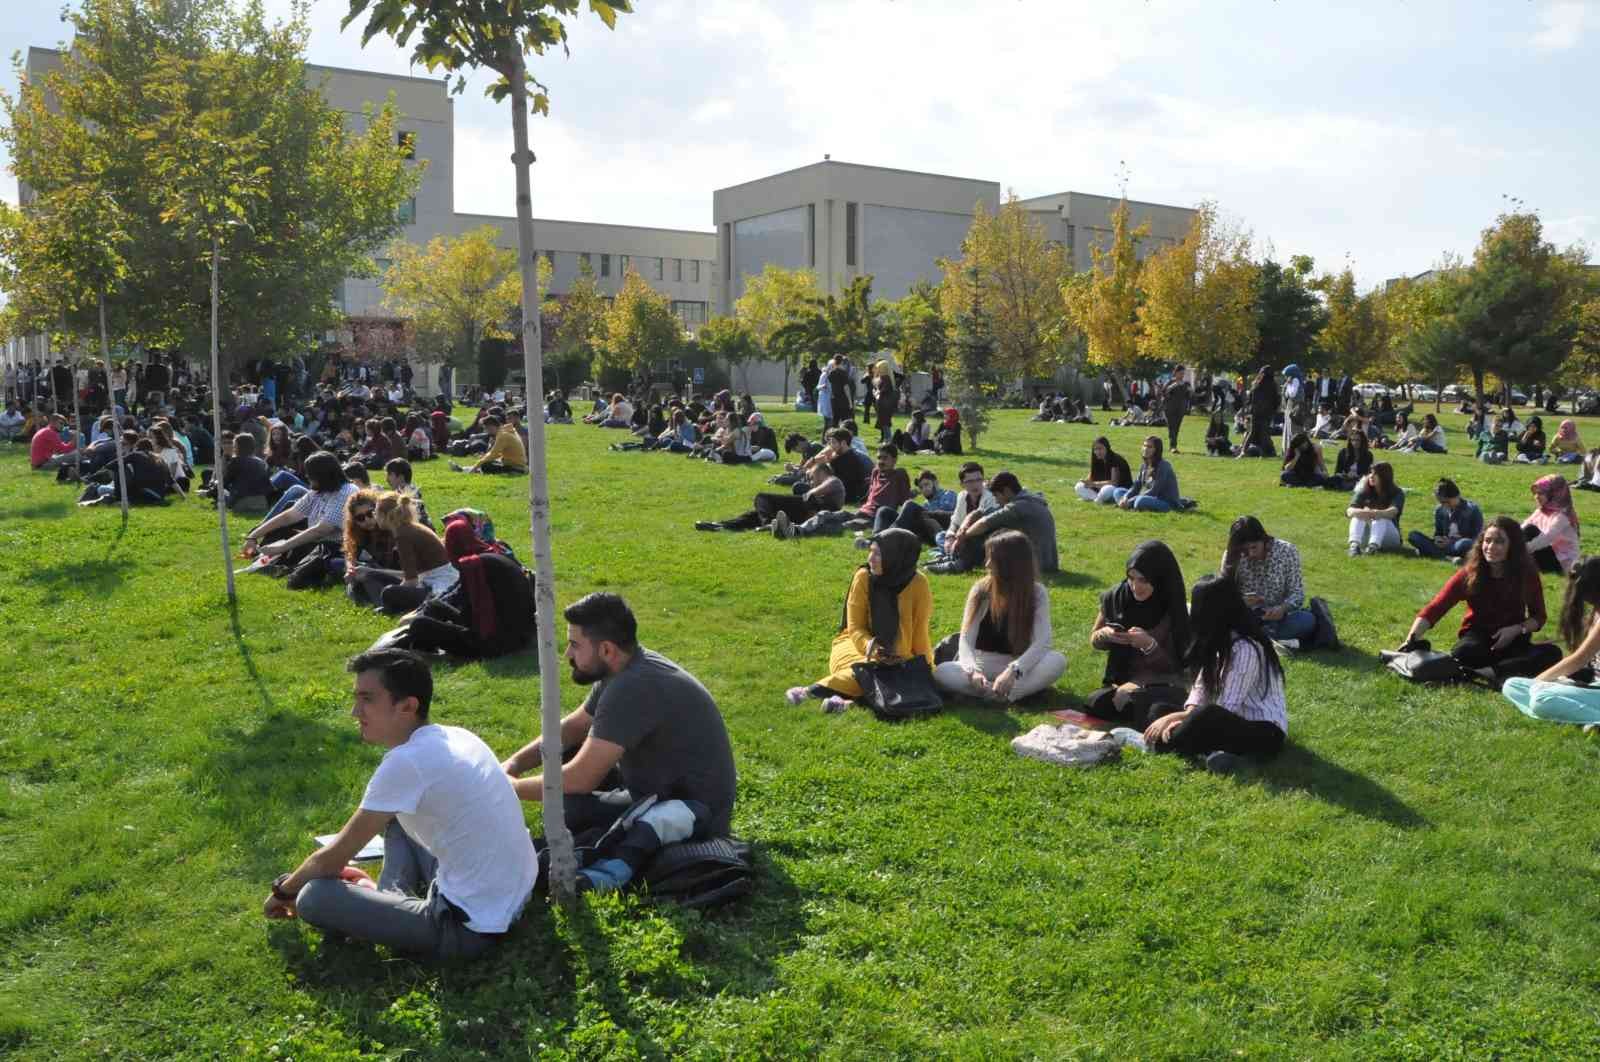 Uşak Üniversitesi, en yeşil üniversiteler arasına girdi #usak